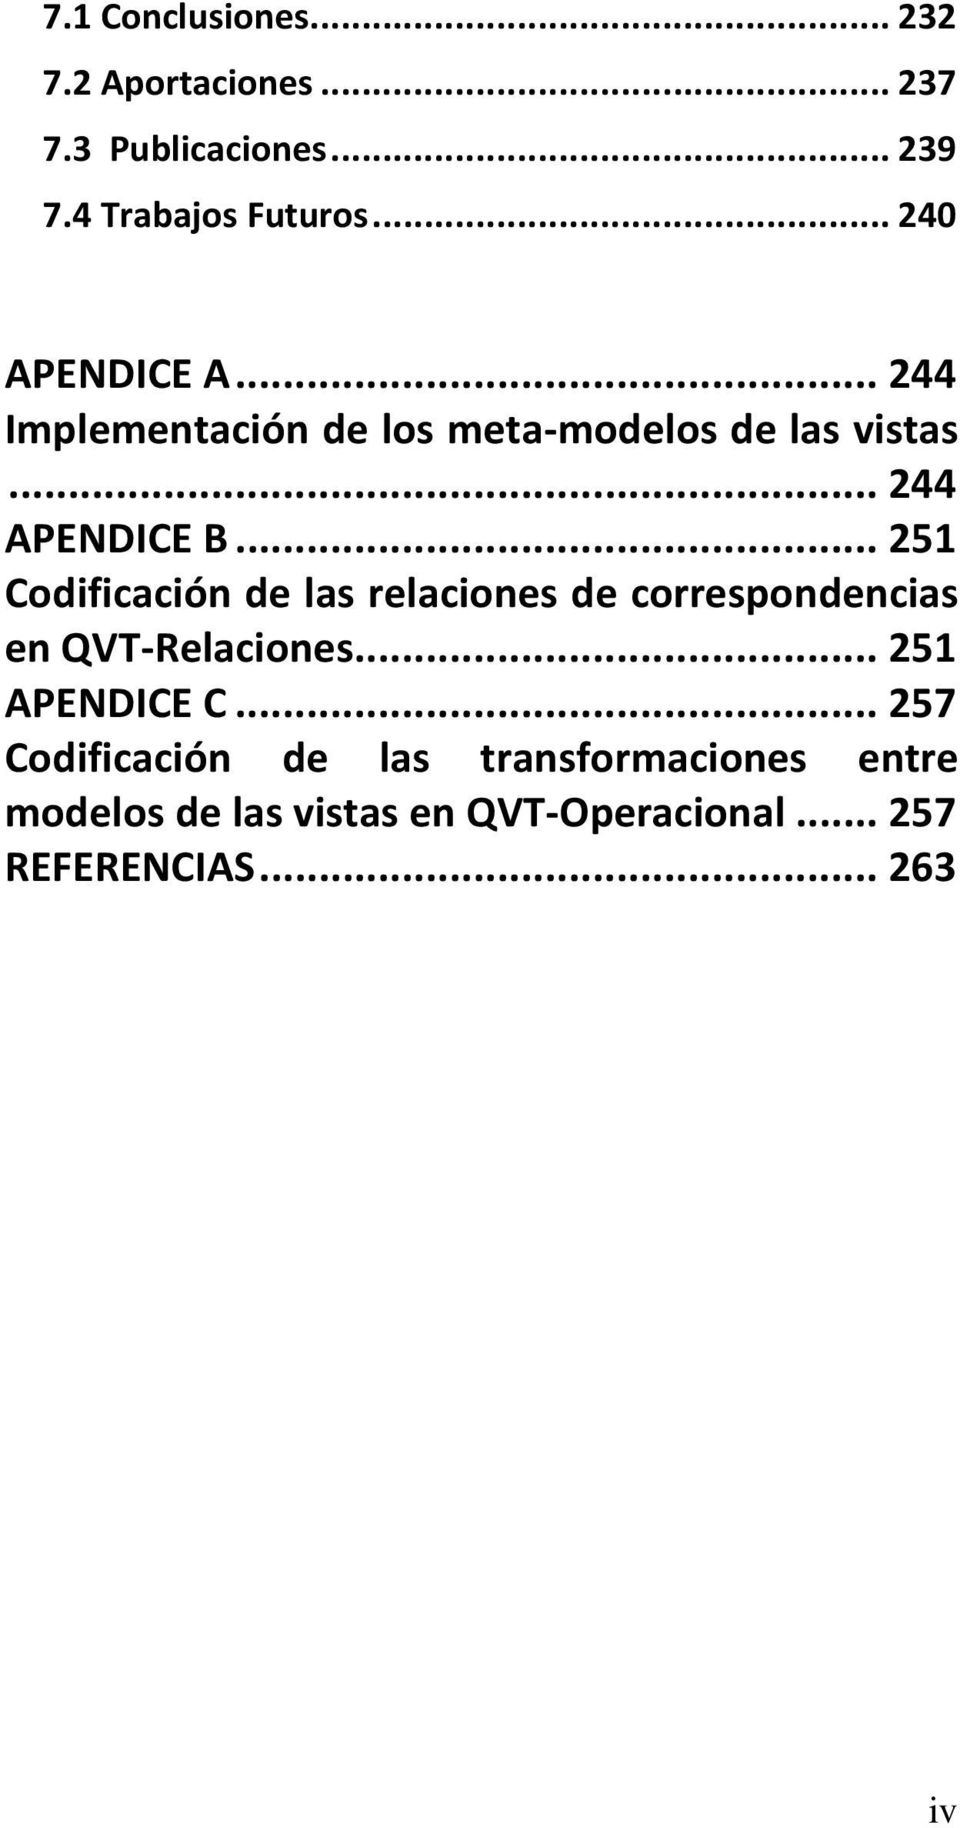 .. 251 Codificación de las relaciones de correspondencias en QVT-Relaciones... 251 APENDICE C.